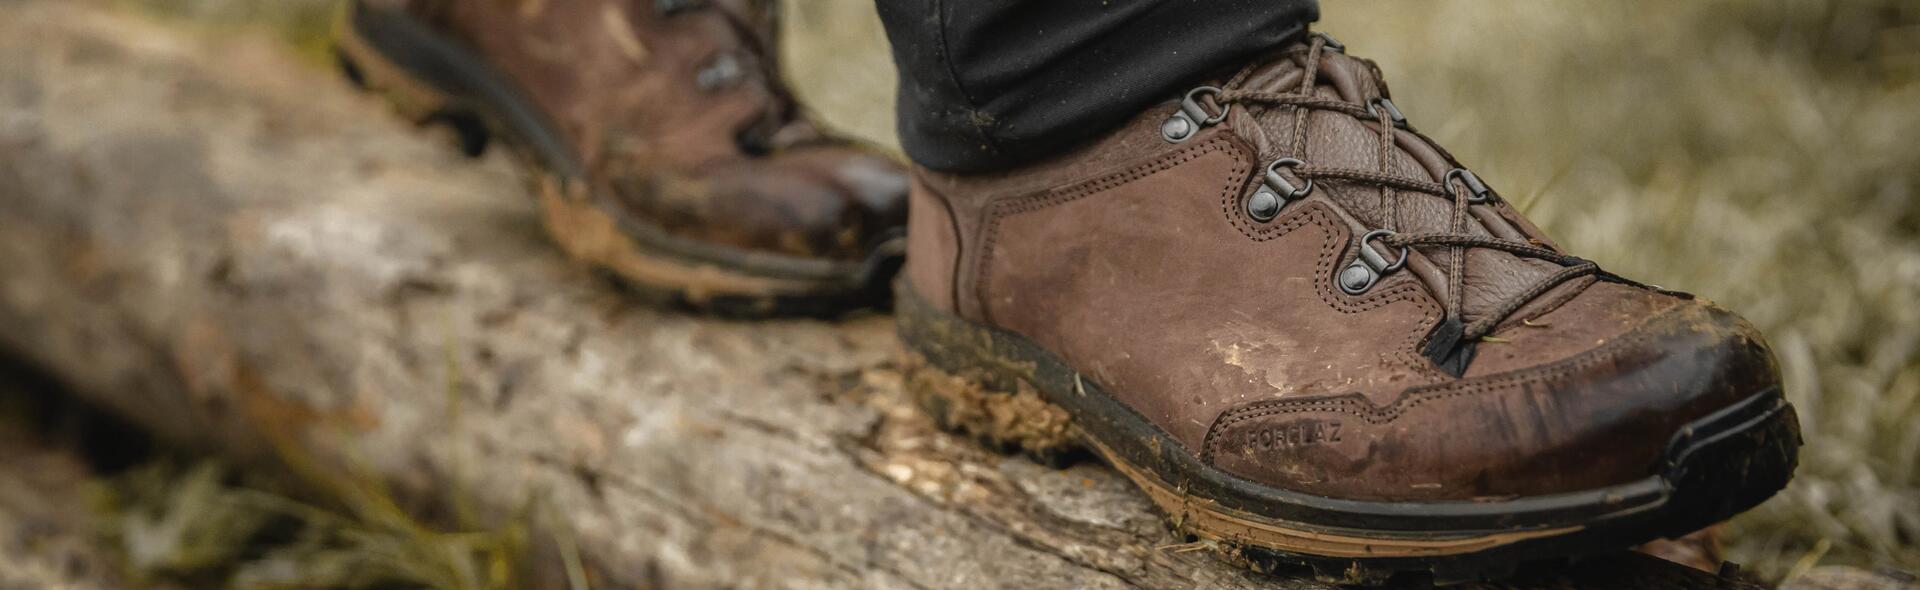 hiking-shoes-sensitive-feet